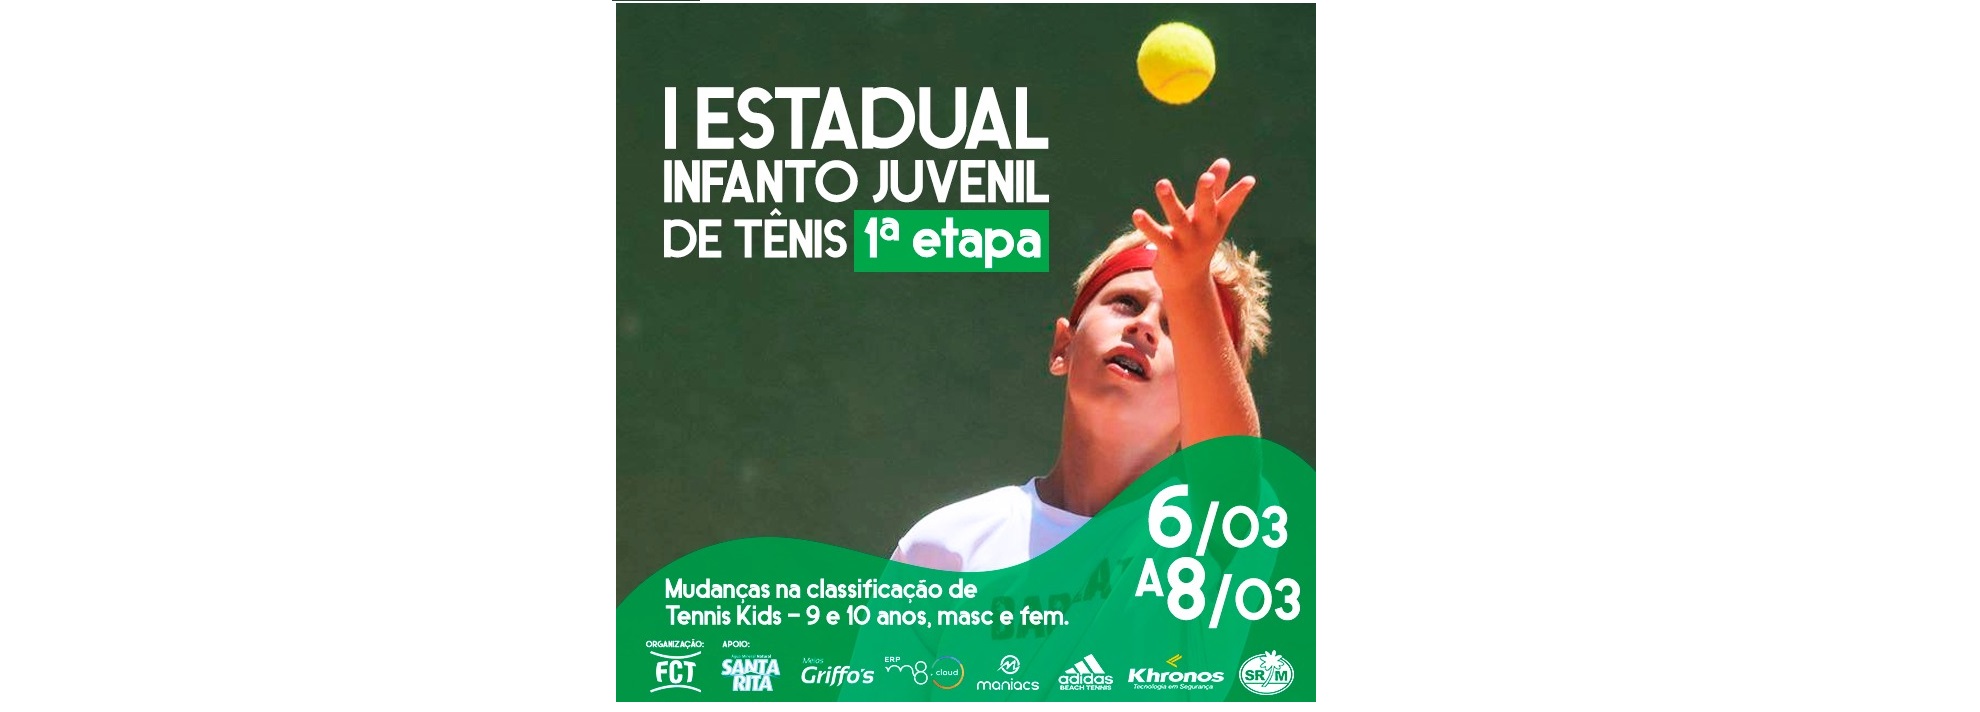 Últimos dias de inscrições para a primeira etapa do I Estadual Infanto Juvenil de Tênis.